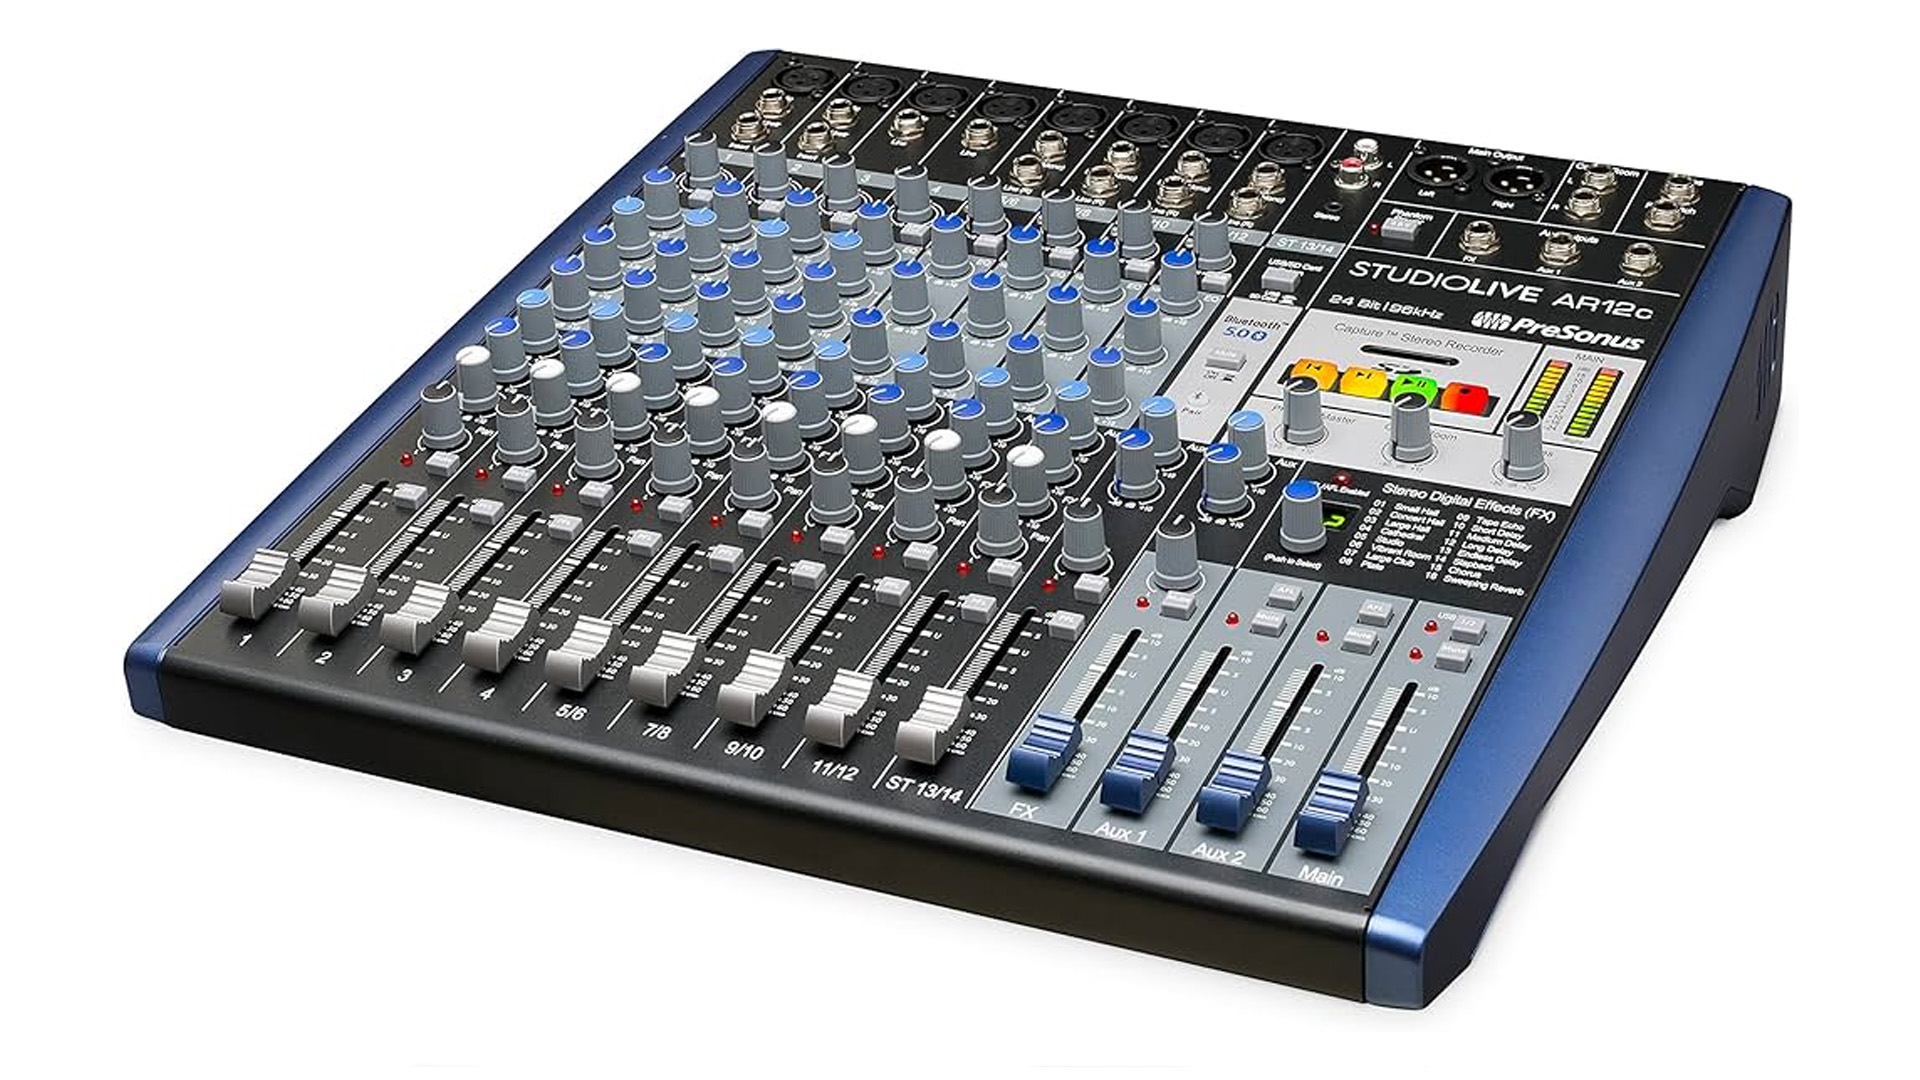 A close up photo of the Presonus StudioLive AR12c mixer